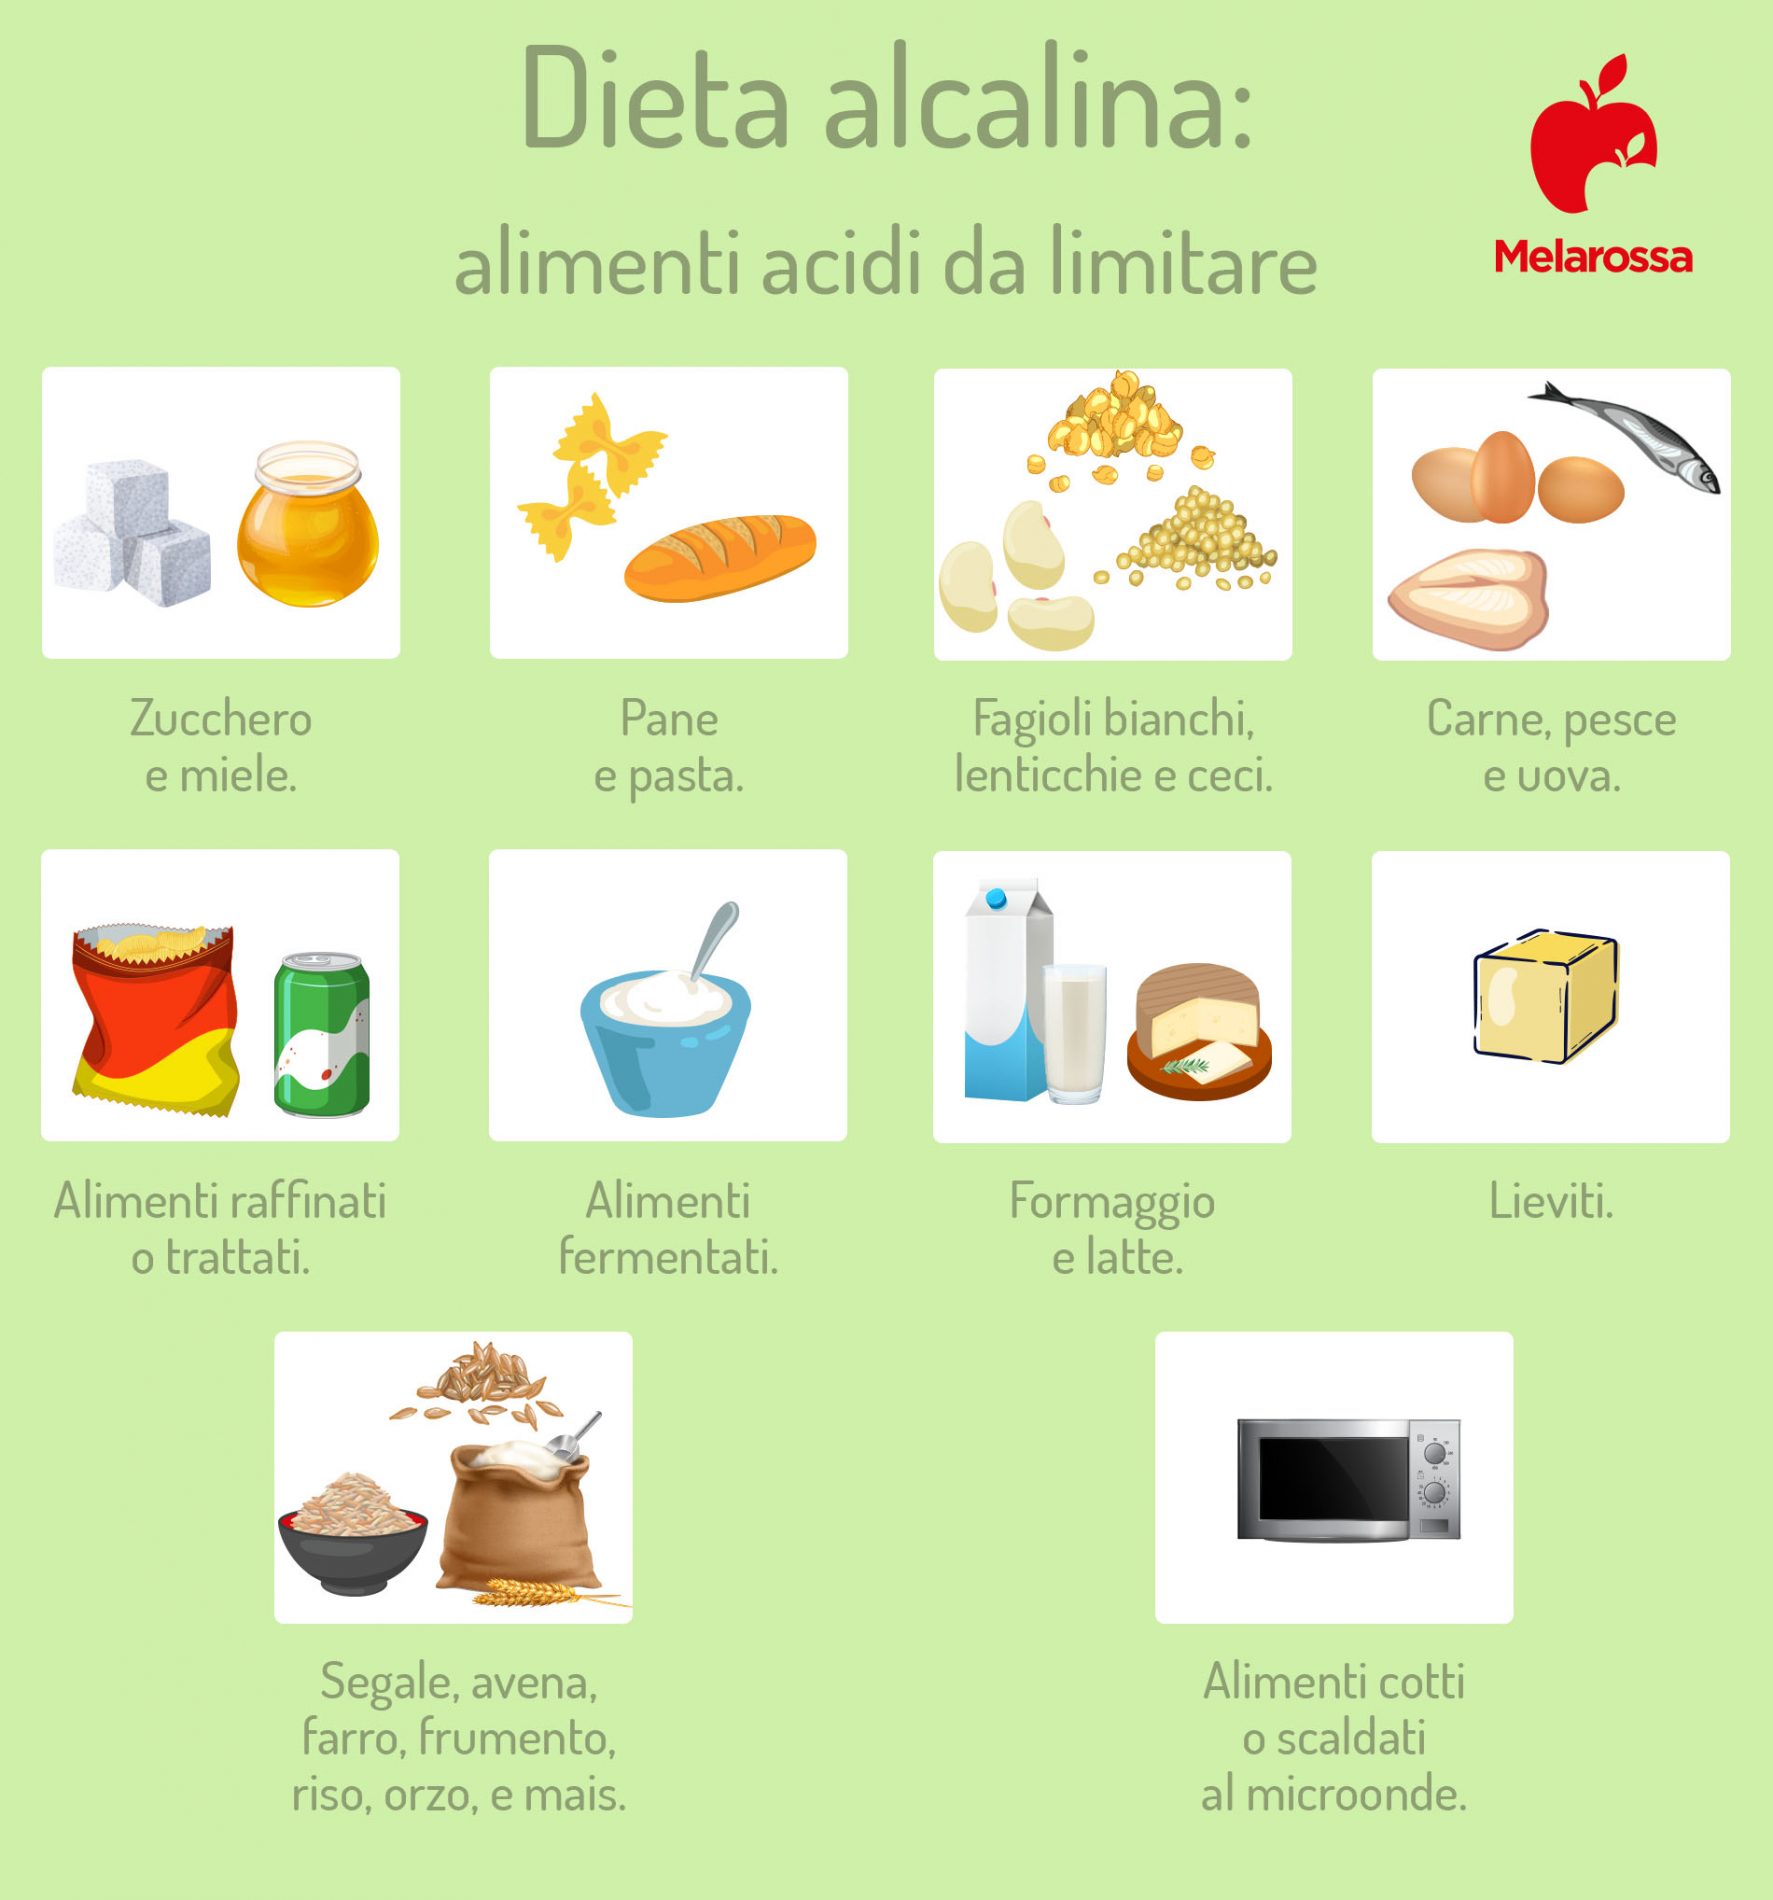 dieta alcalina: alimenti acidi da limitare 